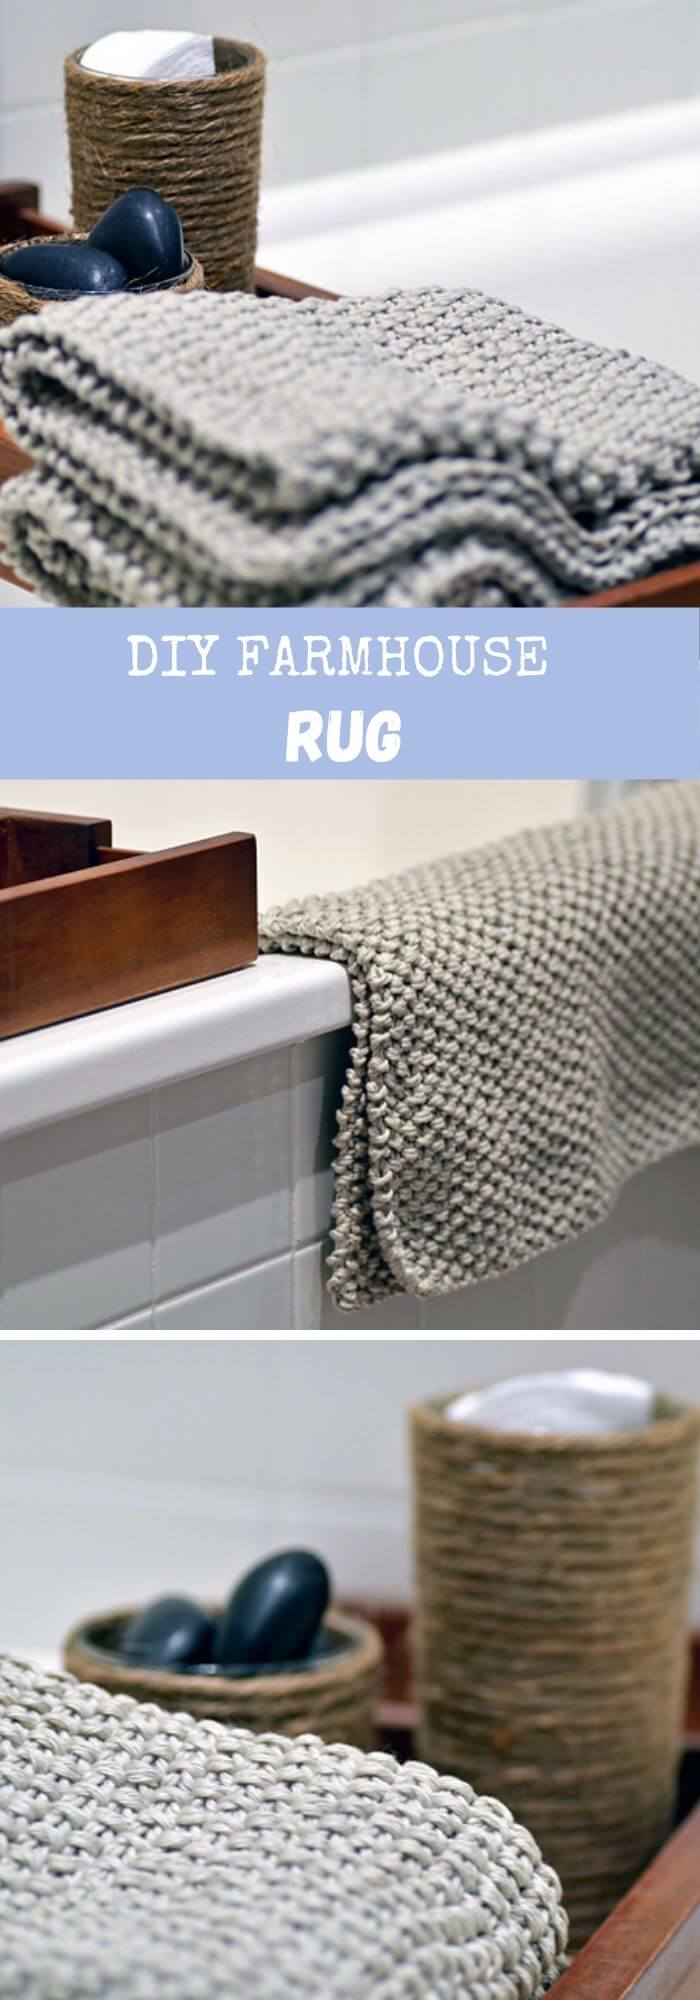 10 farmhouse rug ideas